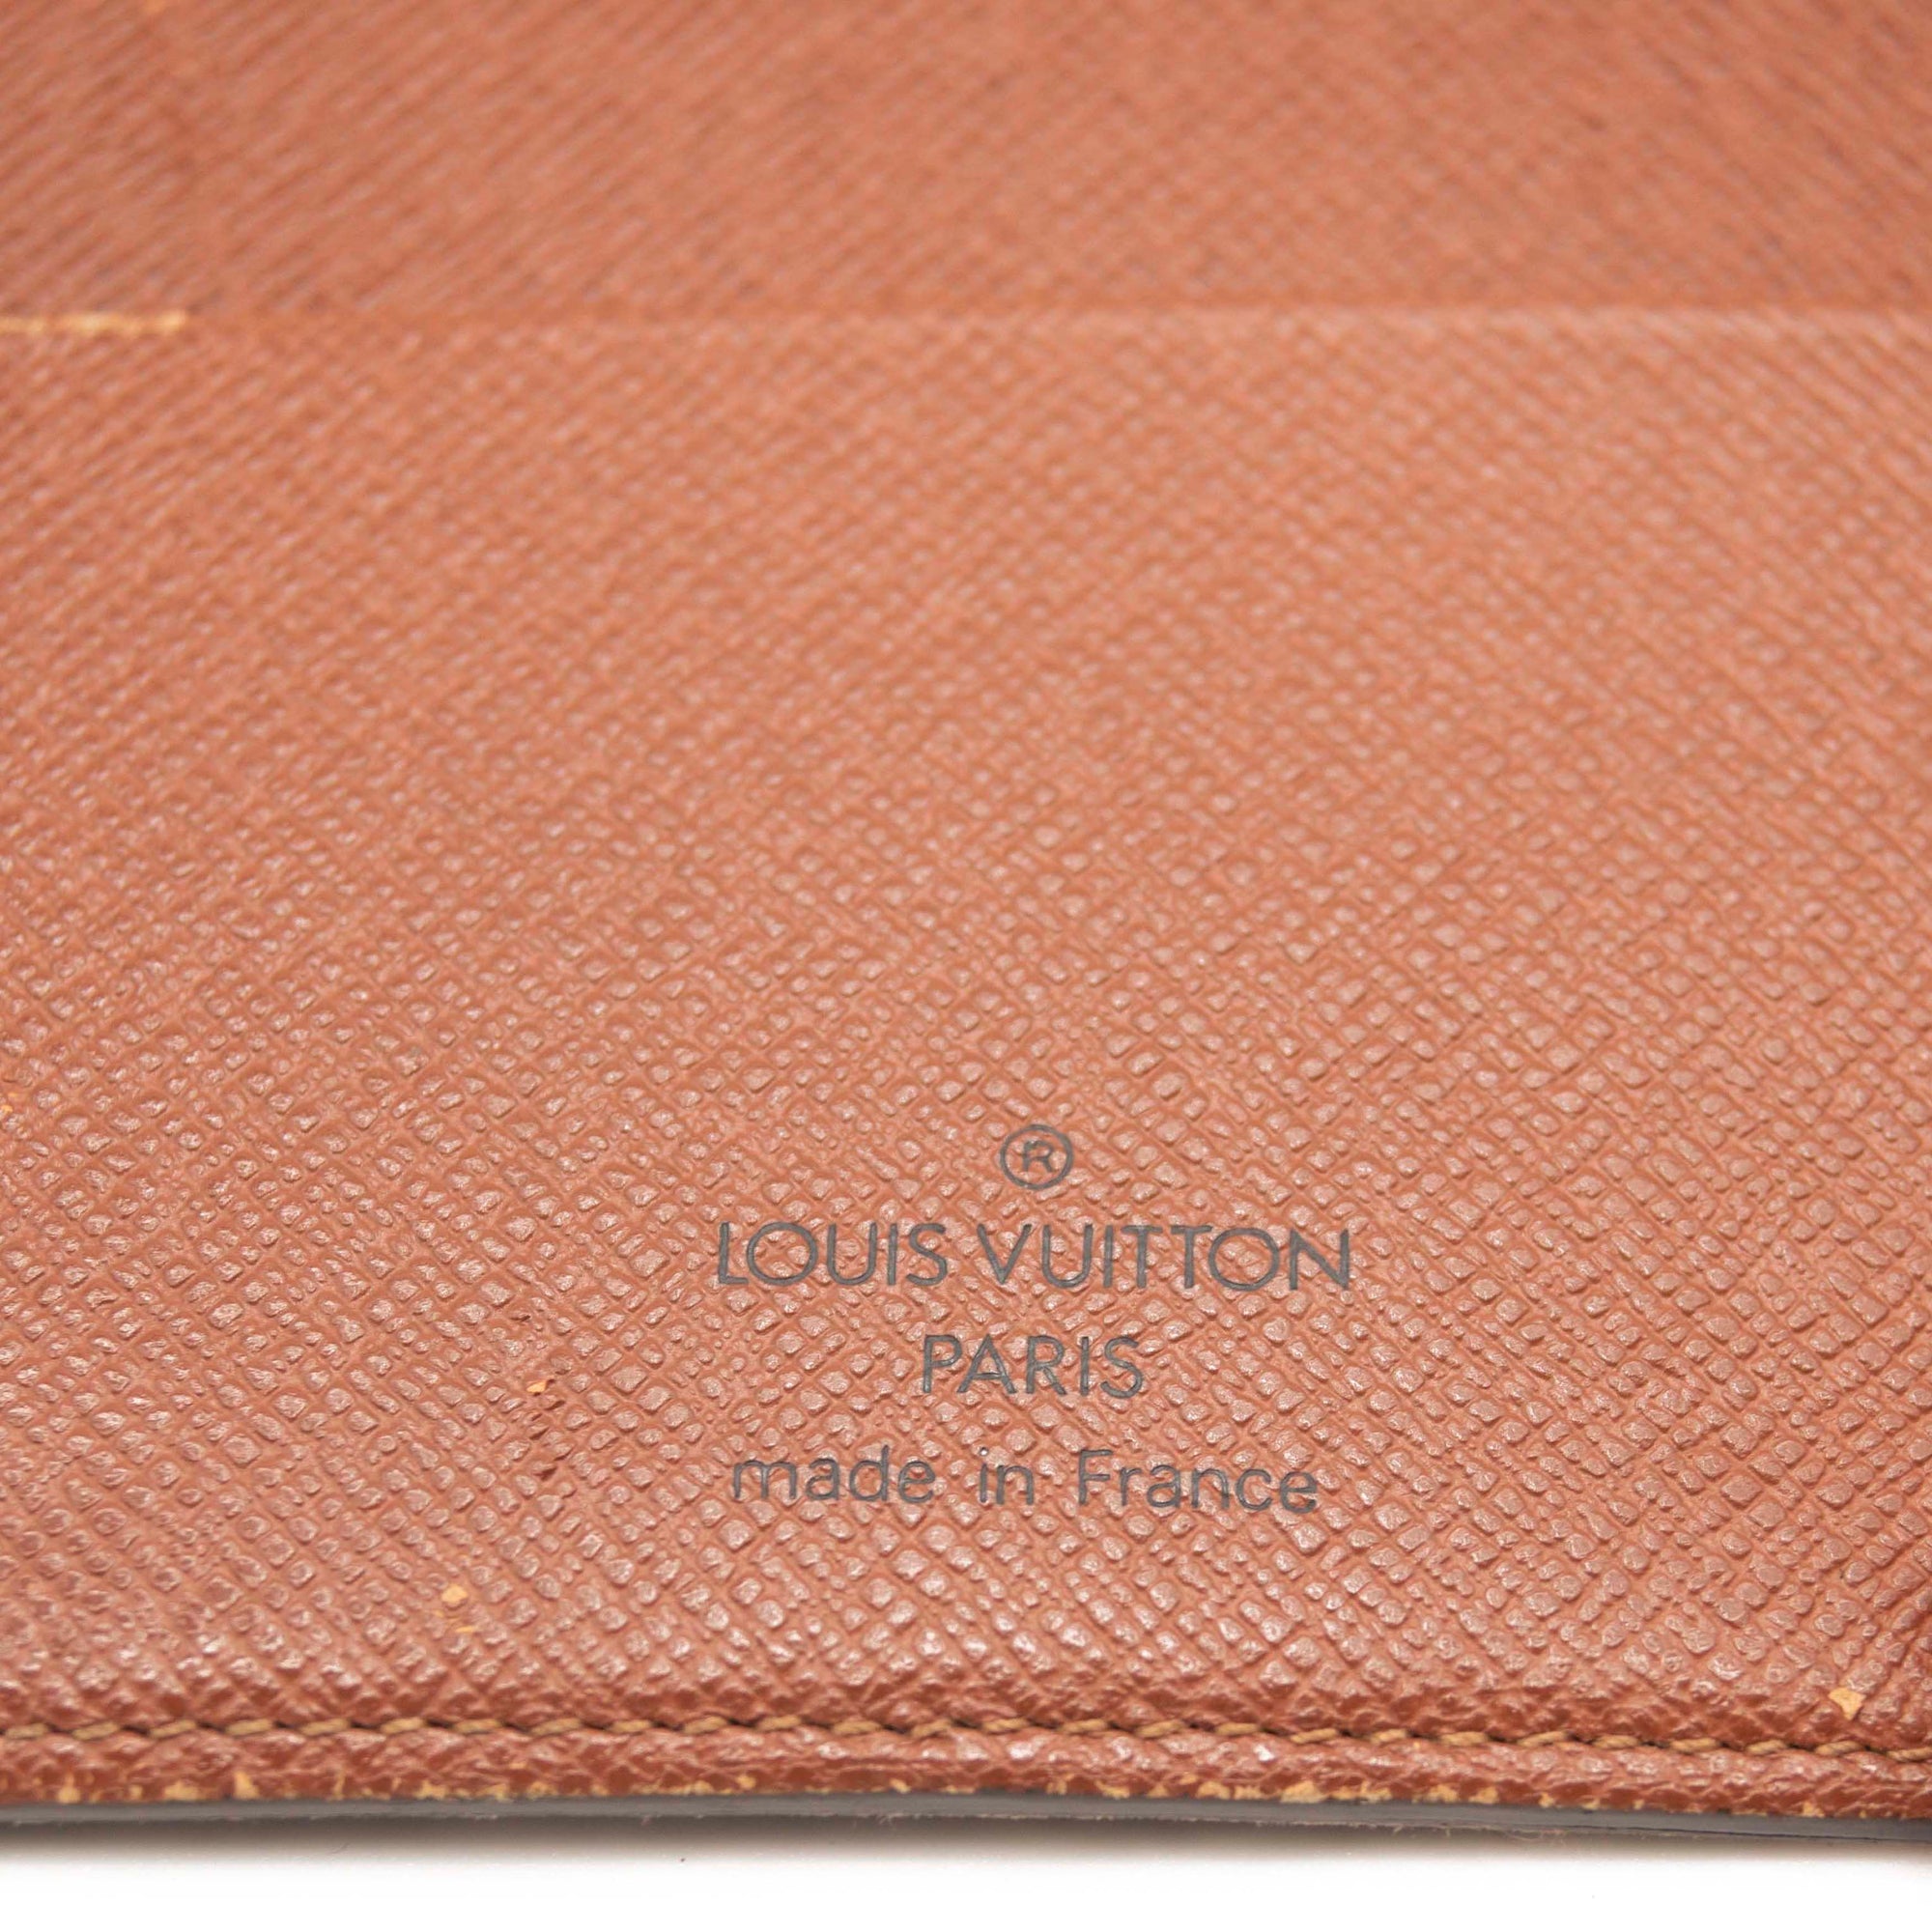 Louis Vuitton Vintage Monogram Canvas Medium Ring Agenda Cover